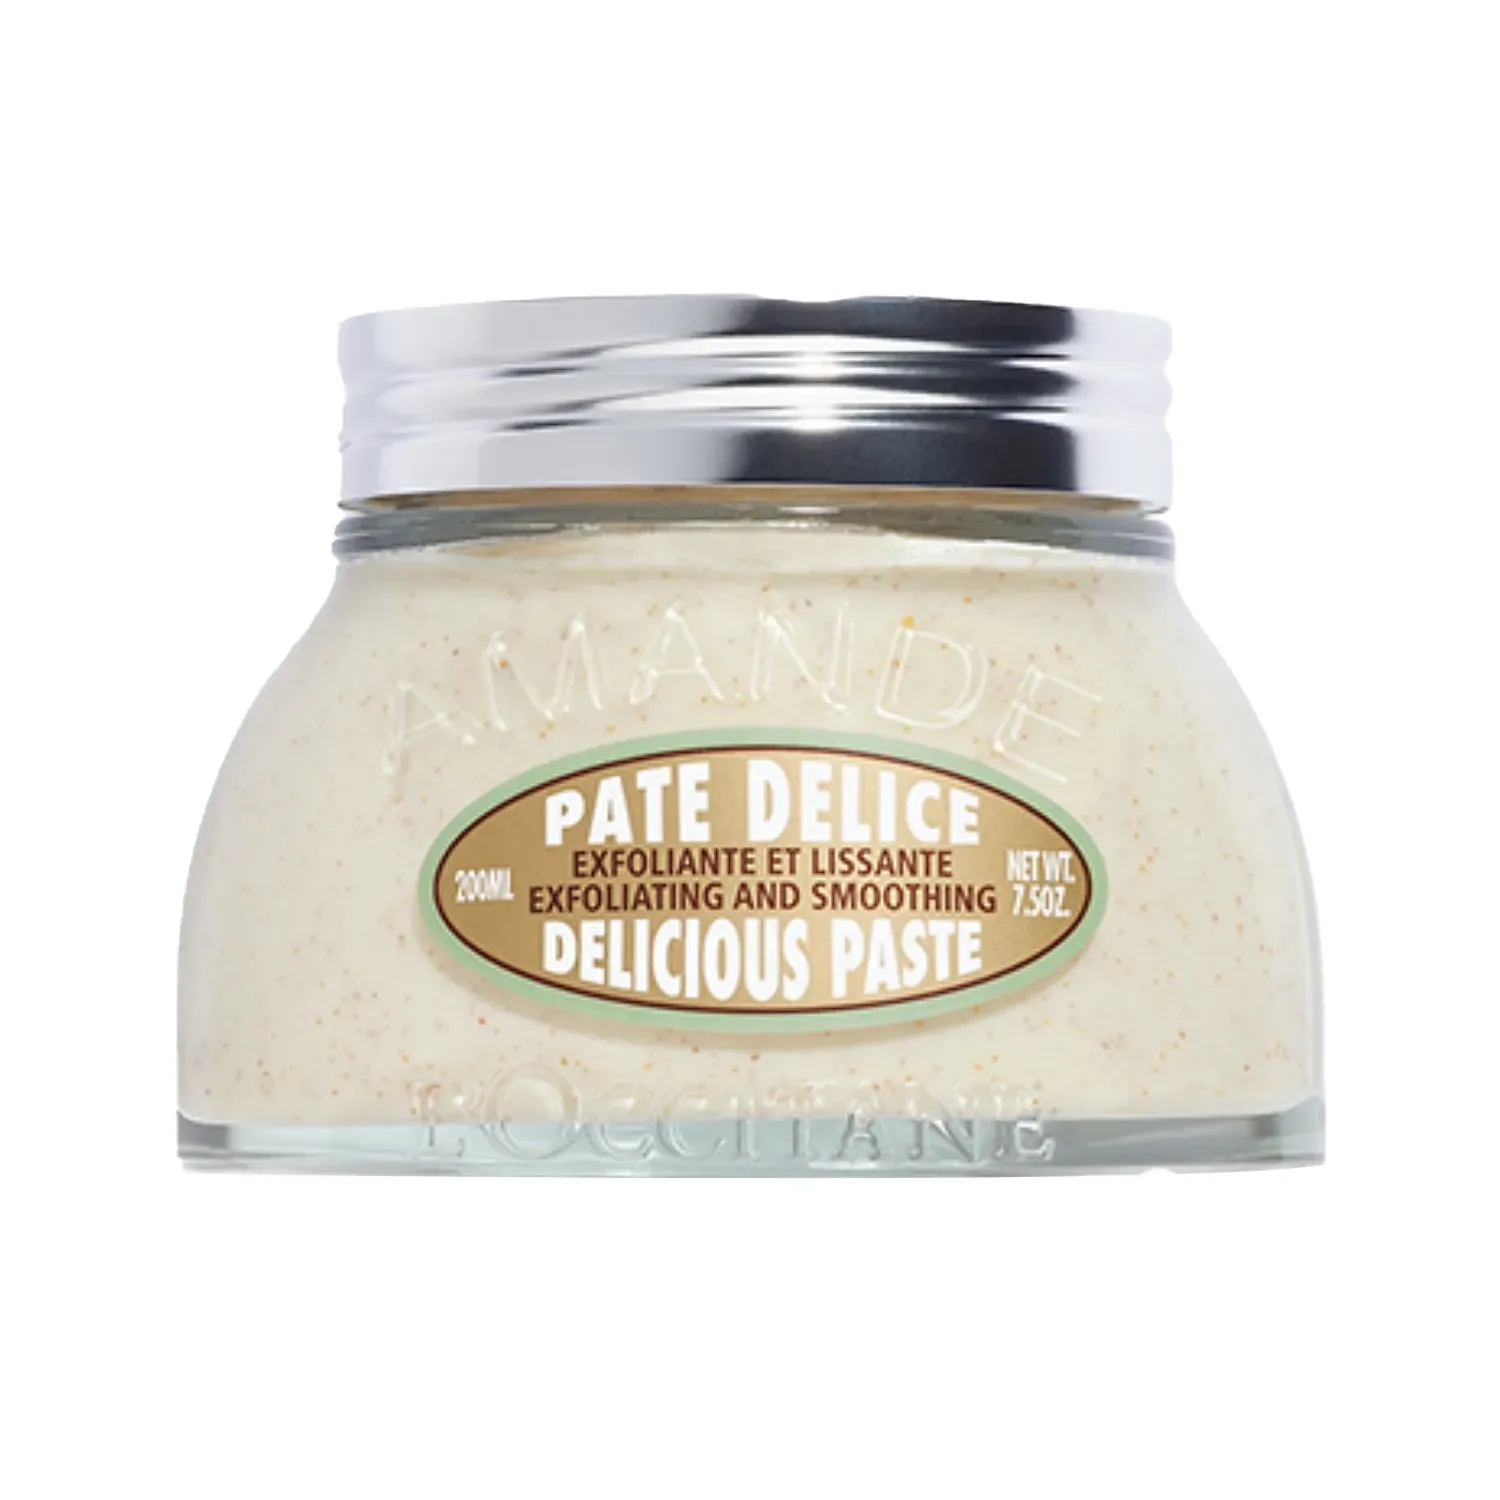 L'occitane | L'occitane Almond Delicious Paste Body Cream - (200ml)